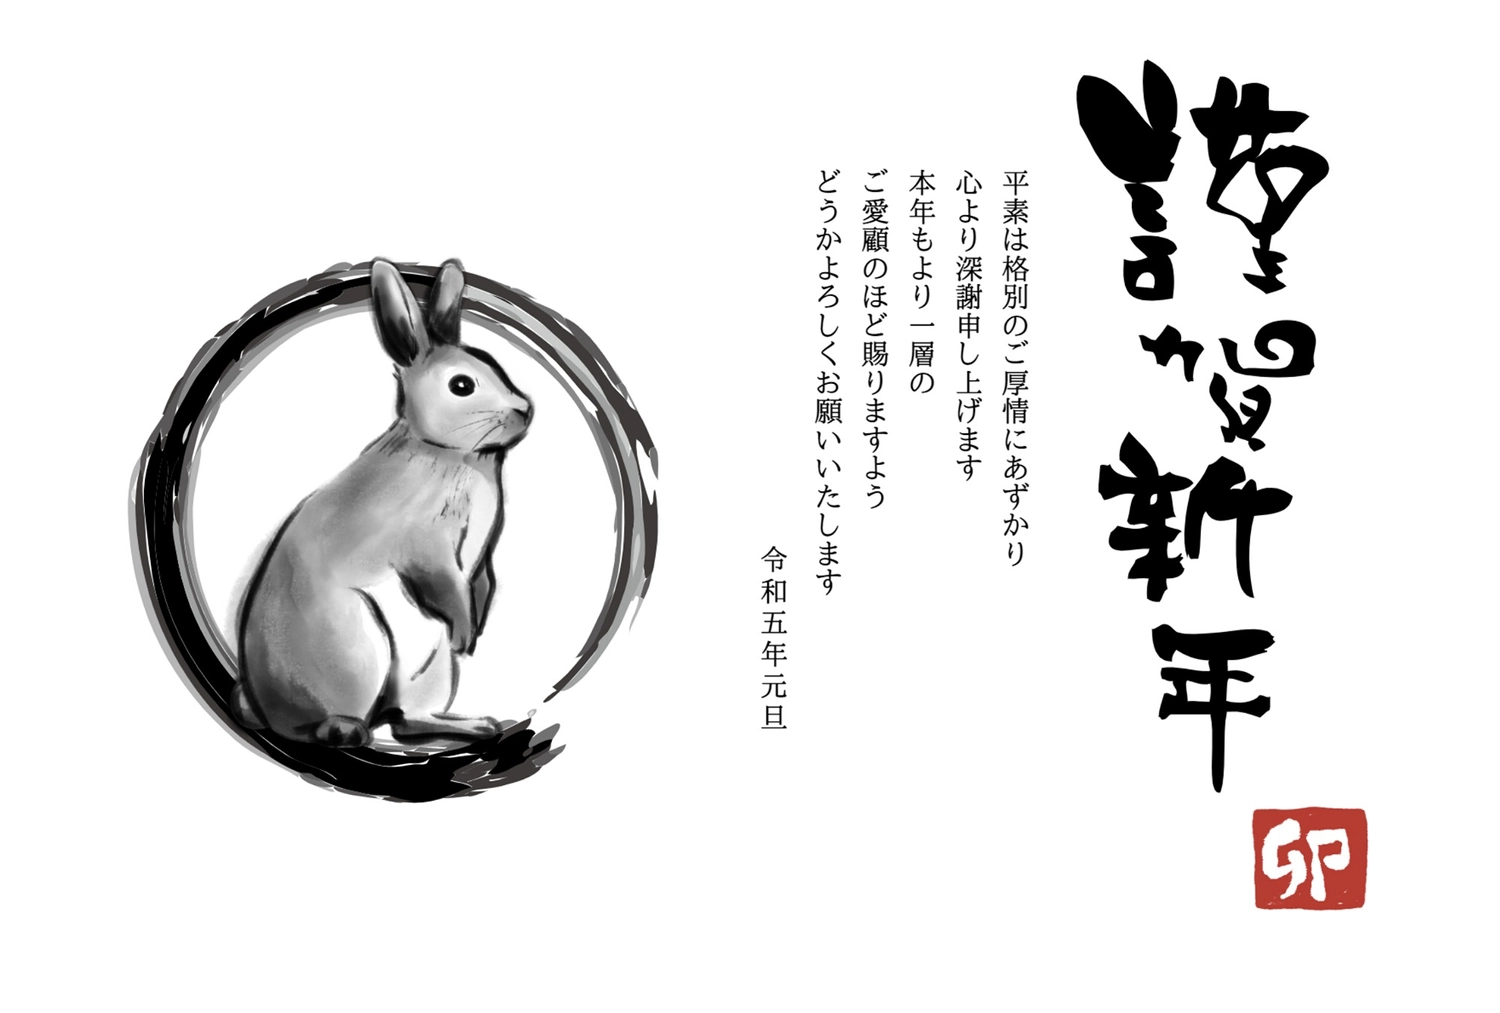 年賀状　水墨画風うさぎ, New Year's card, ink painting style, sign and seal, New Year Card template